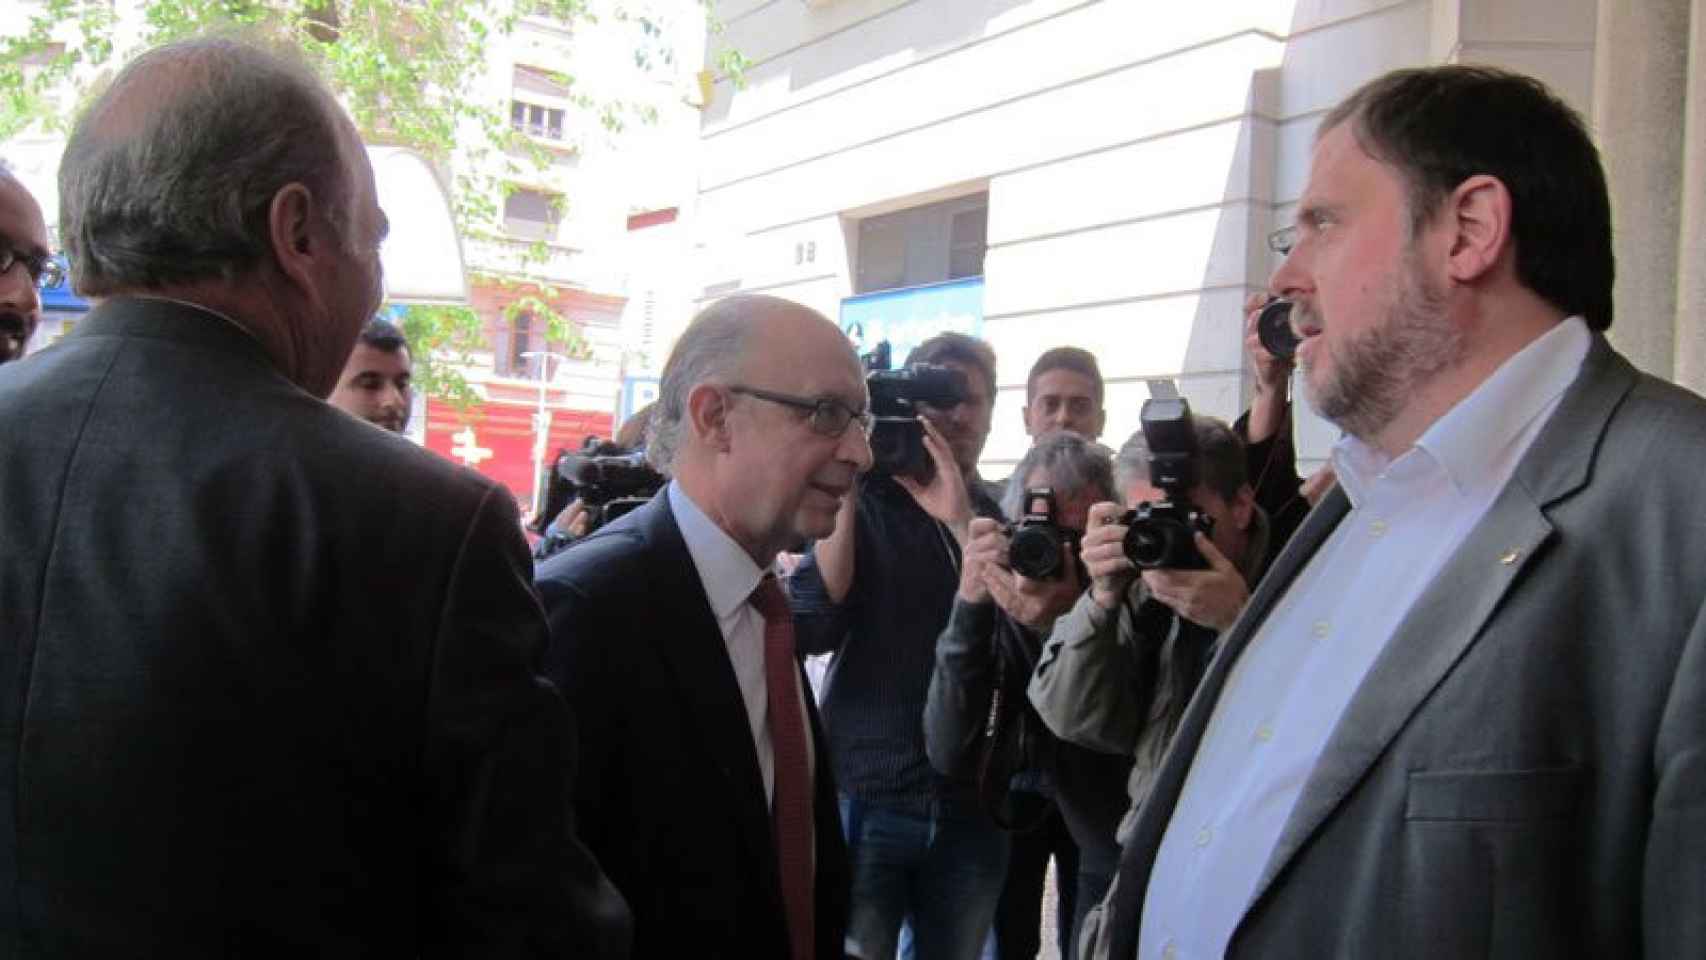 Cristóbal Motoro (centro), ministro de Hacienda, es recibido por el vicepresidente económico catalán, Oriol Junqueras, en la puerta de Foment del Treball.